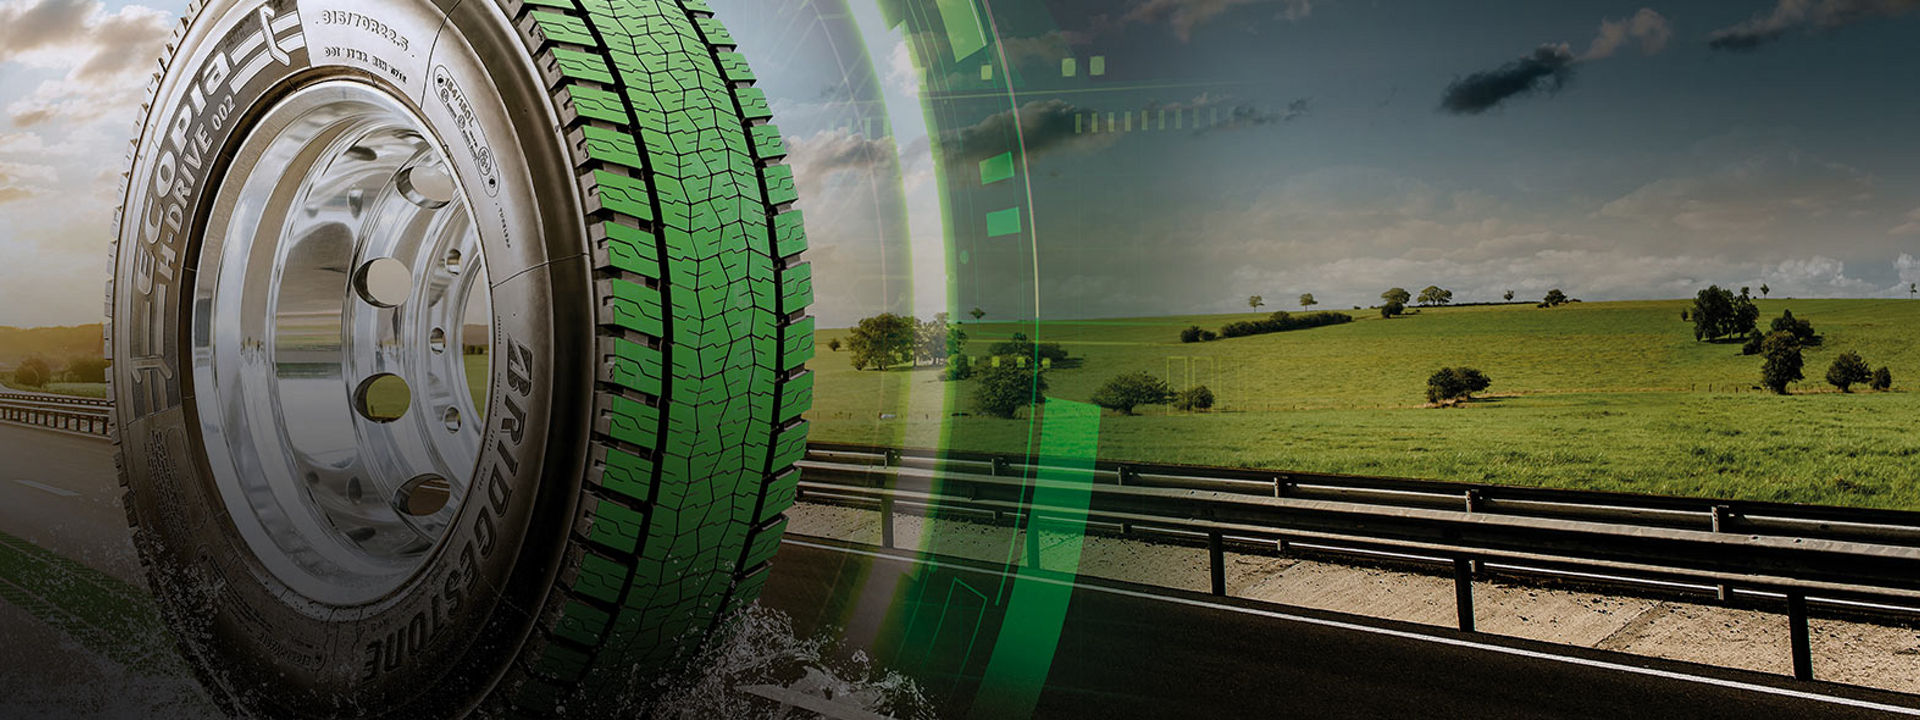 Obrázek ukazuje náhled pneumatiky Bridgestone Ecopia H002 na dálnici.